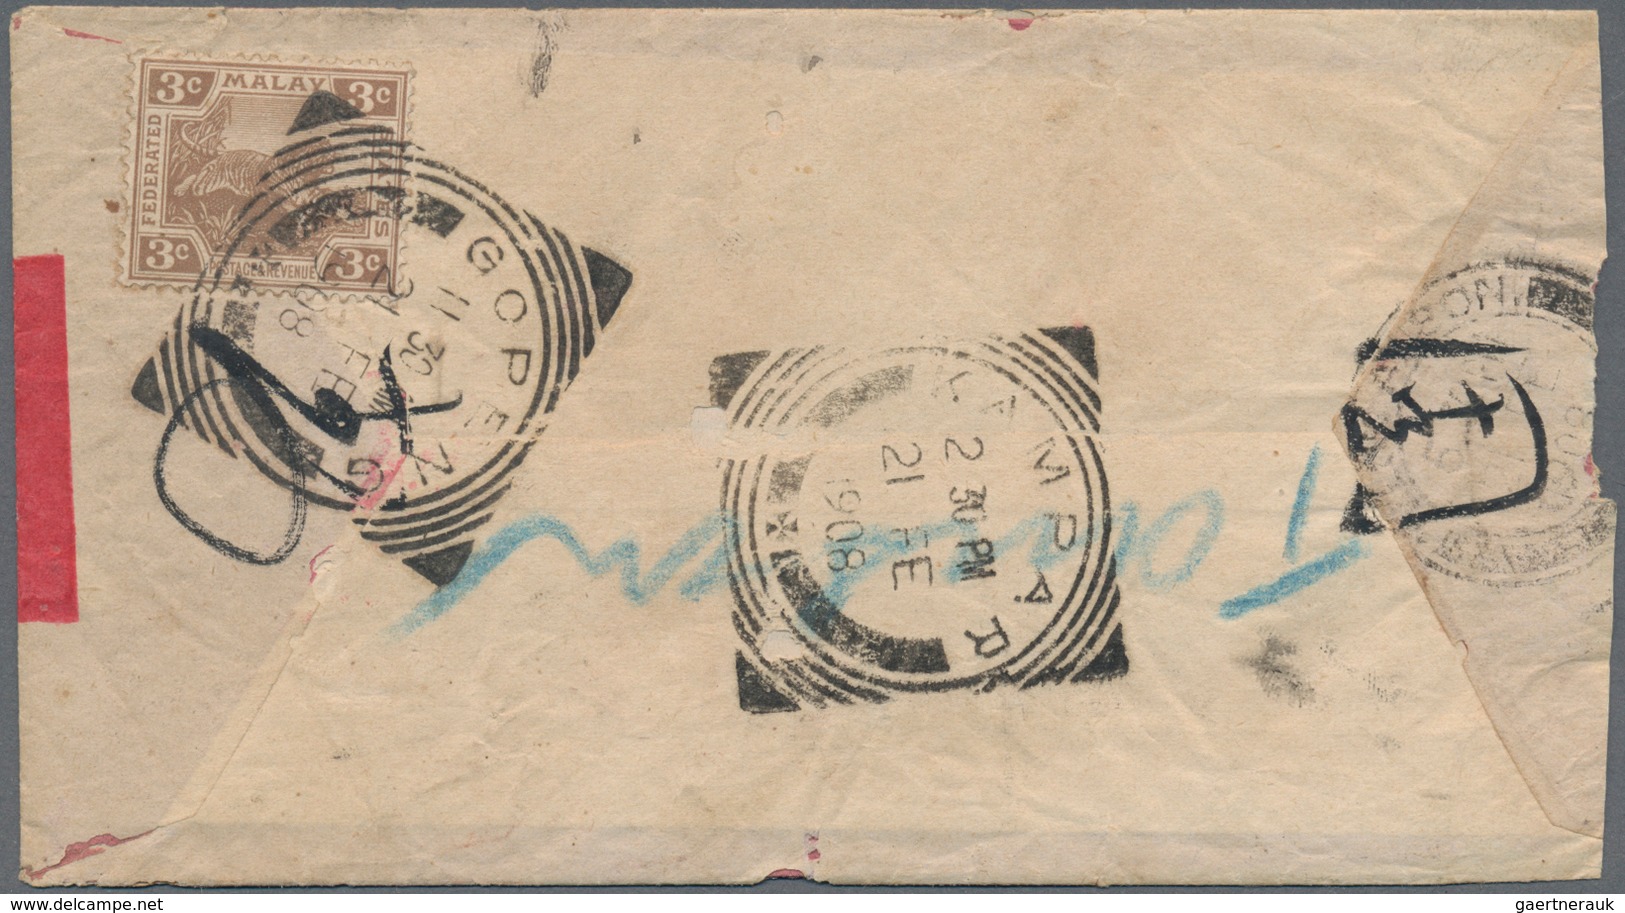 Malaiische Staaten - Perak: 1908, Redband Envelope Bearing 3 C Tiger On Back Tied By GOPENG Postmark - Perak